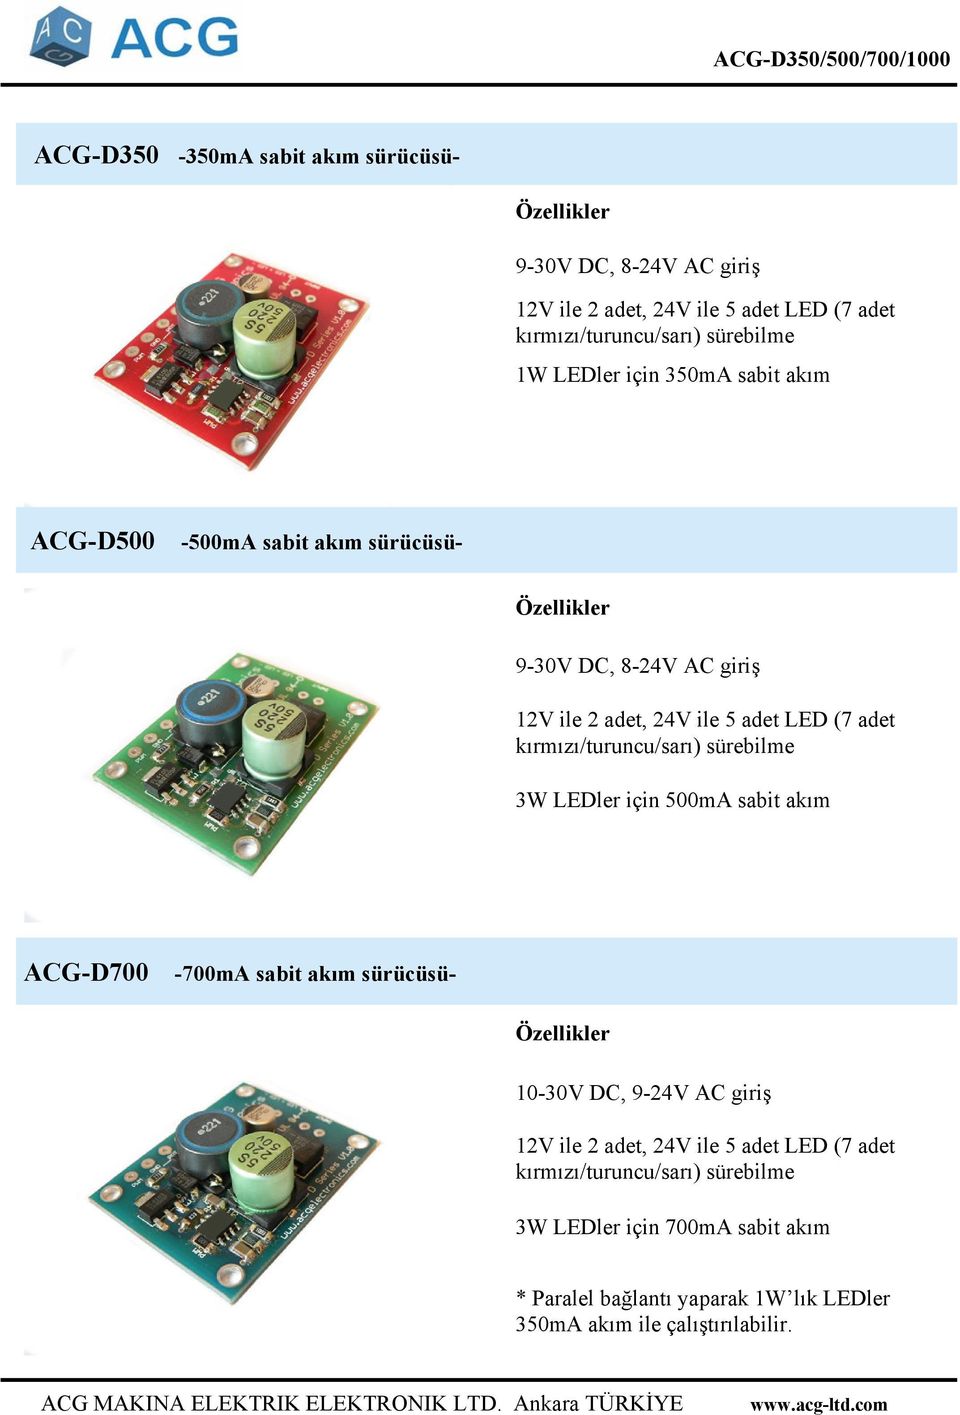 sabit akım ACG-D700-700mA sabit akım sürücüsü- 10-30V DC, 9-24V AC giriş 3W LEDler için